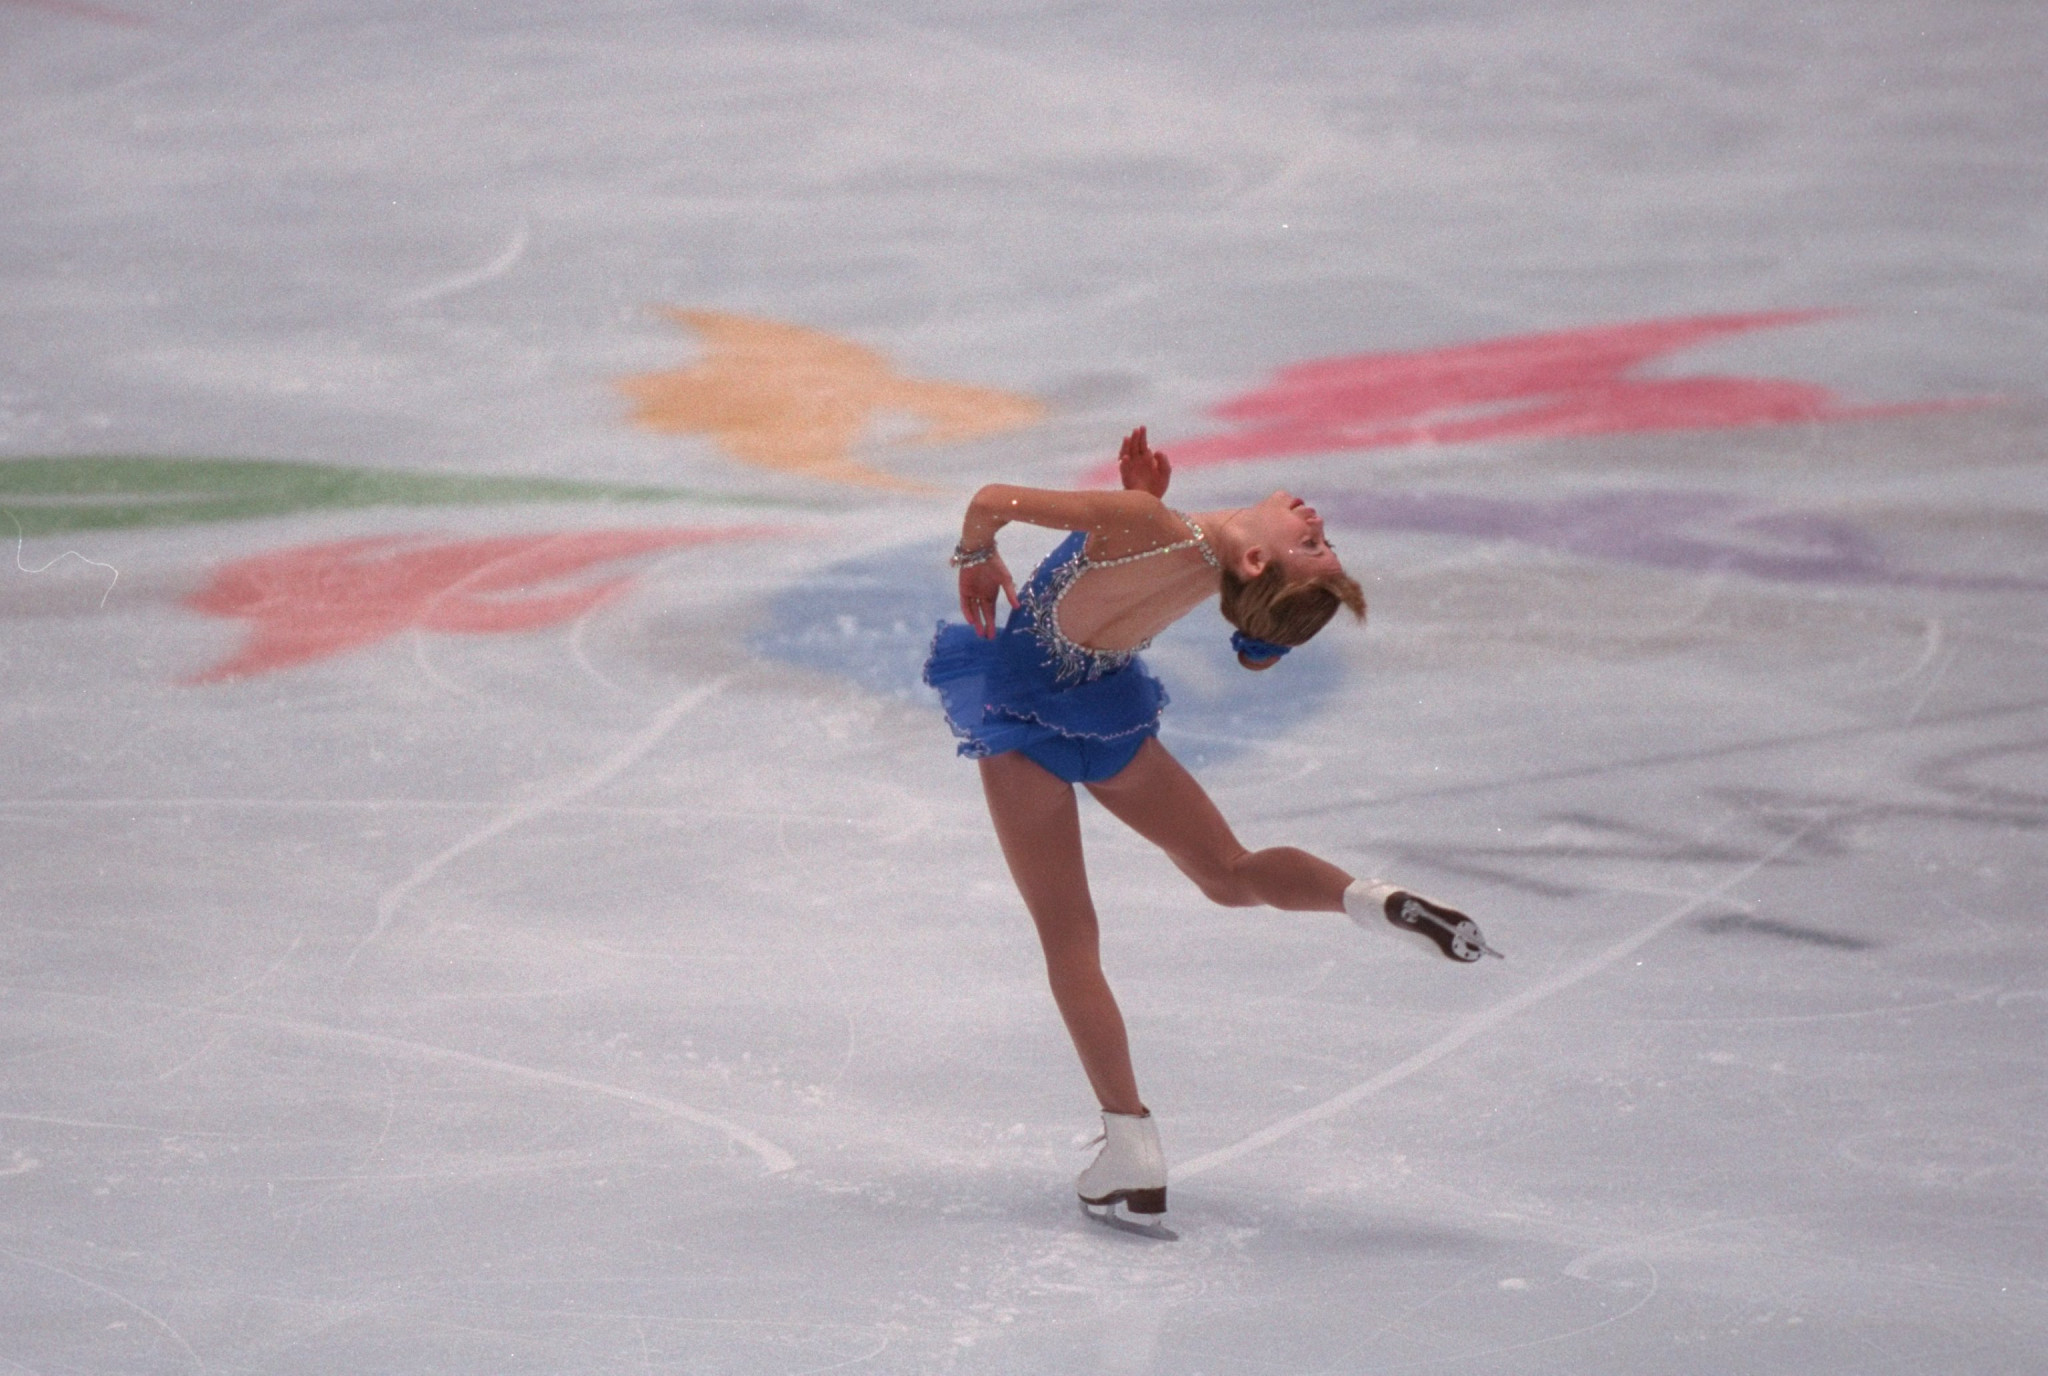 Tara Lipinski was just 15 when she won gold at the Nagano 1998 Winter Olympics ©Getty Images